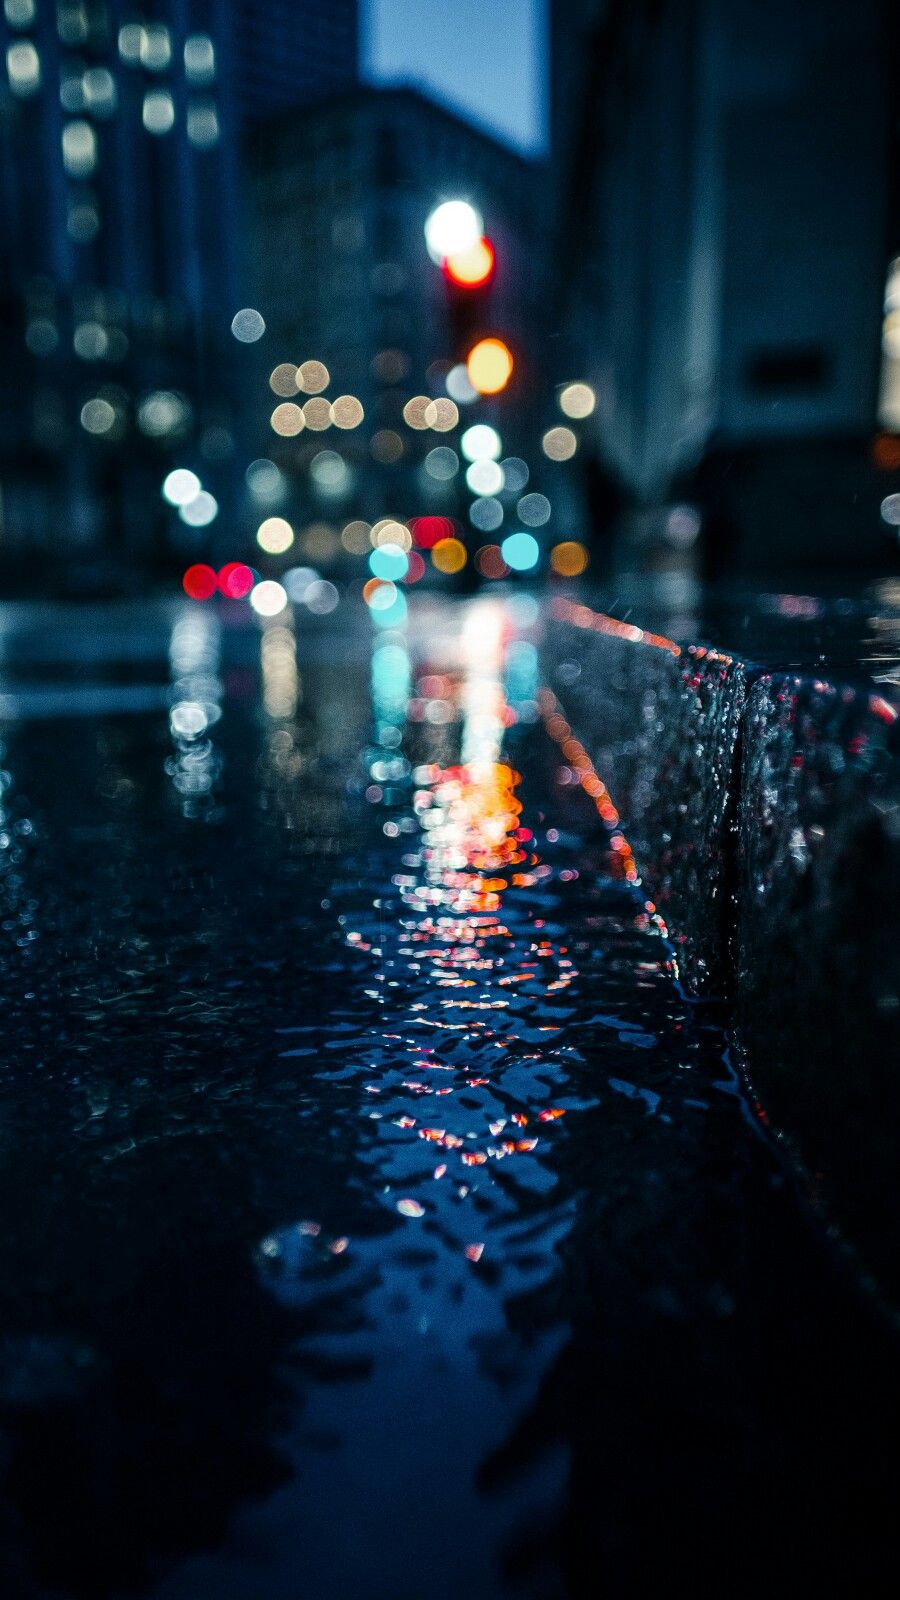 fond d'écran pour android tumblr,l'eau,bleu,réflexion,nuit,pluie